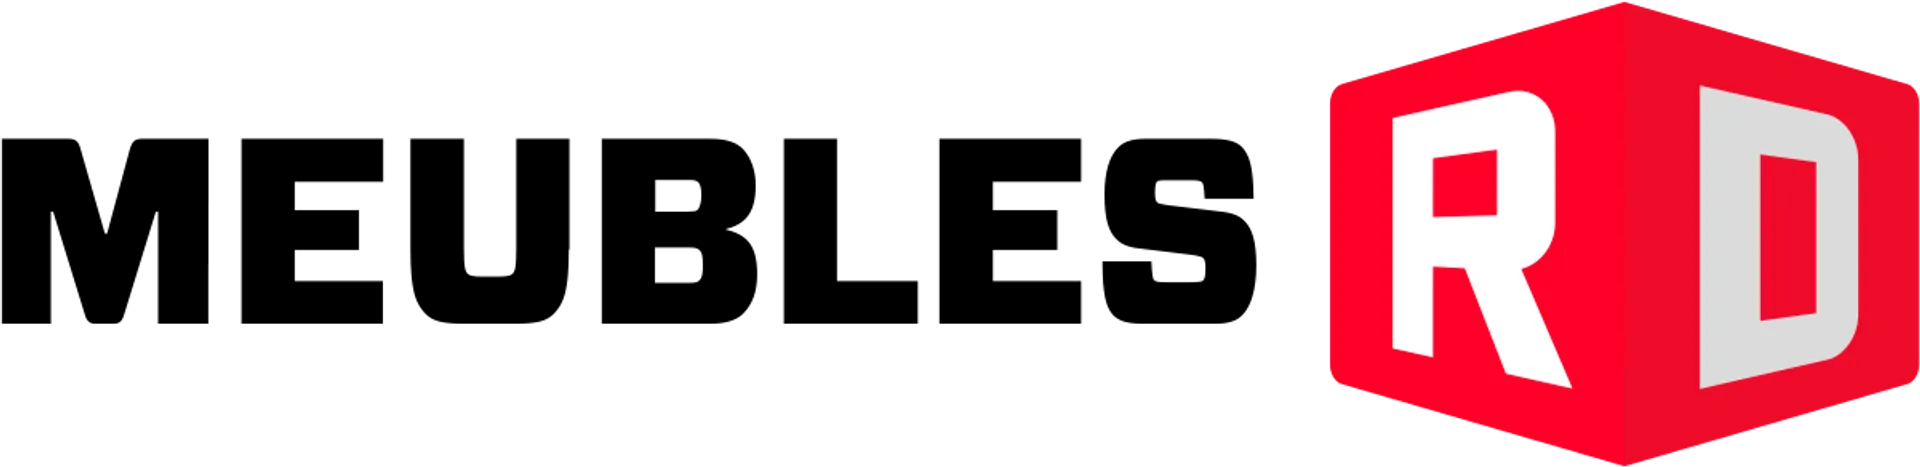 MEUBLES RD logo de circulaires